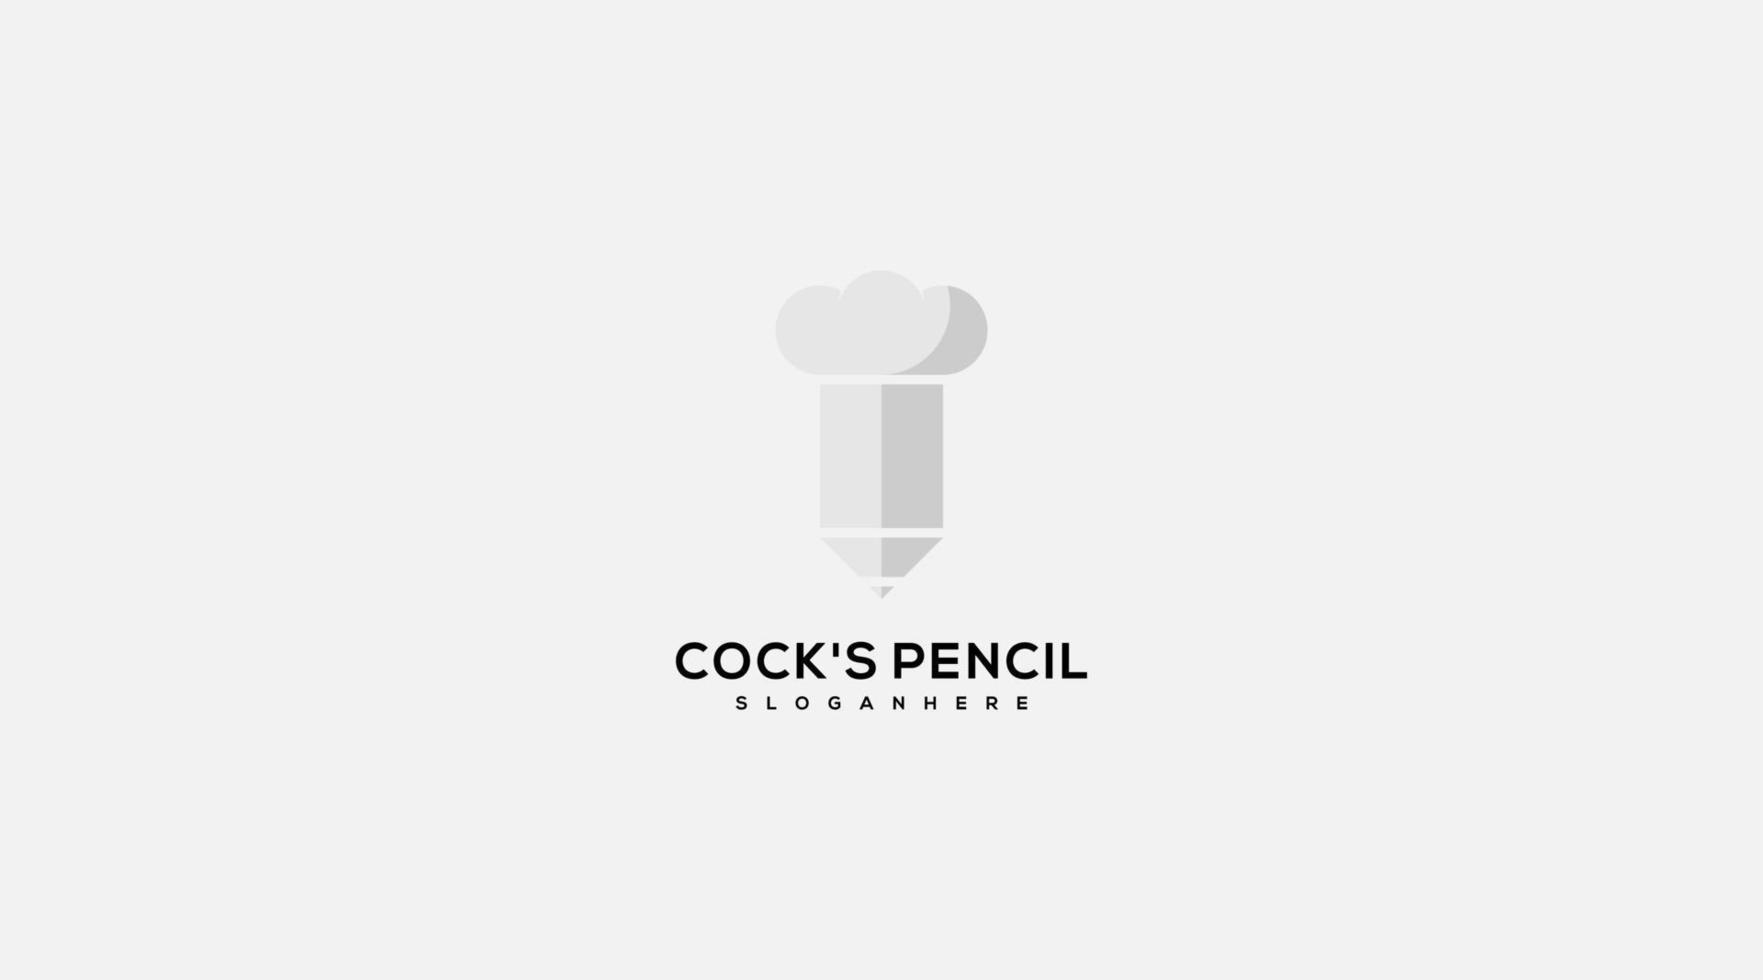 Cock's Pencil Vektor-Logo-Design-Vorlage vektor